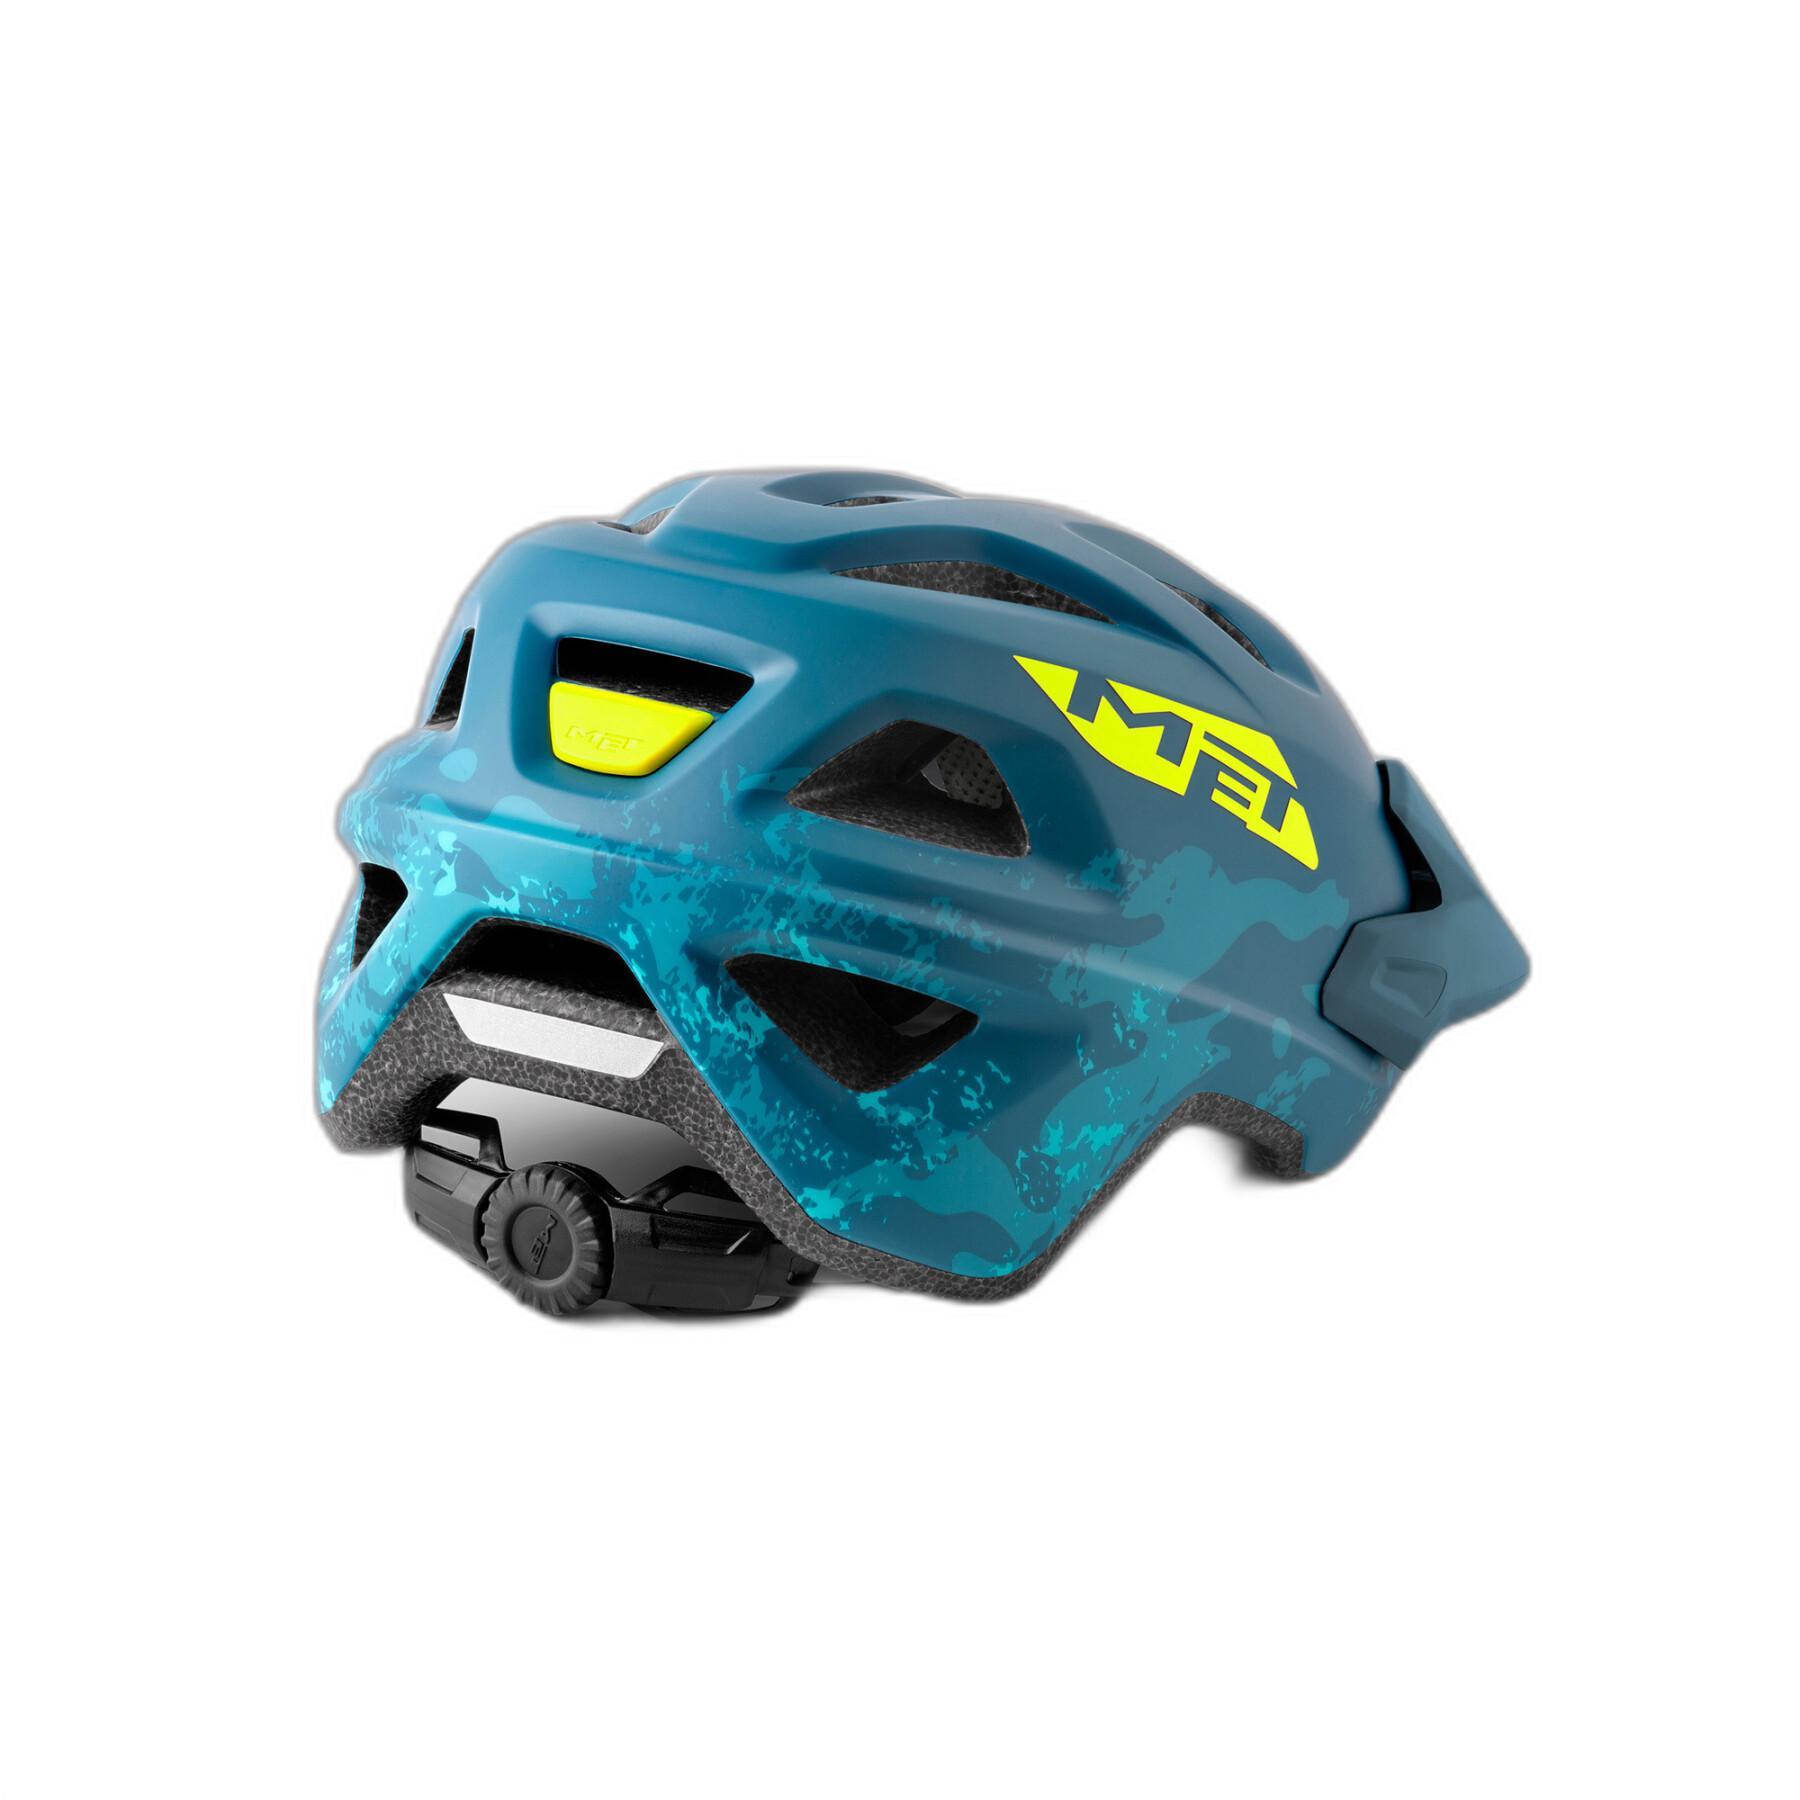 Kinder-Mountainbike-Helm Met Eldar